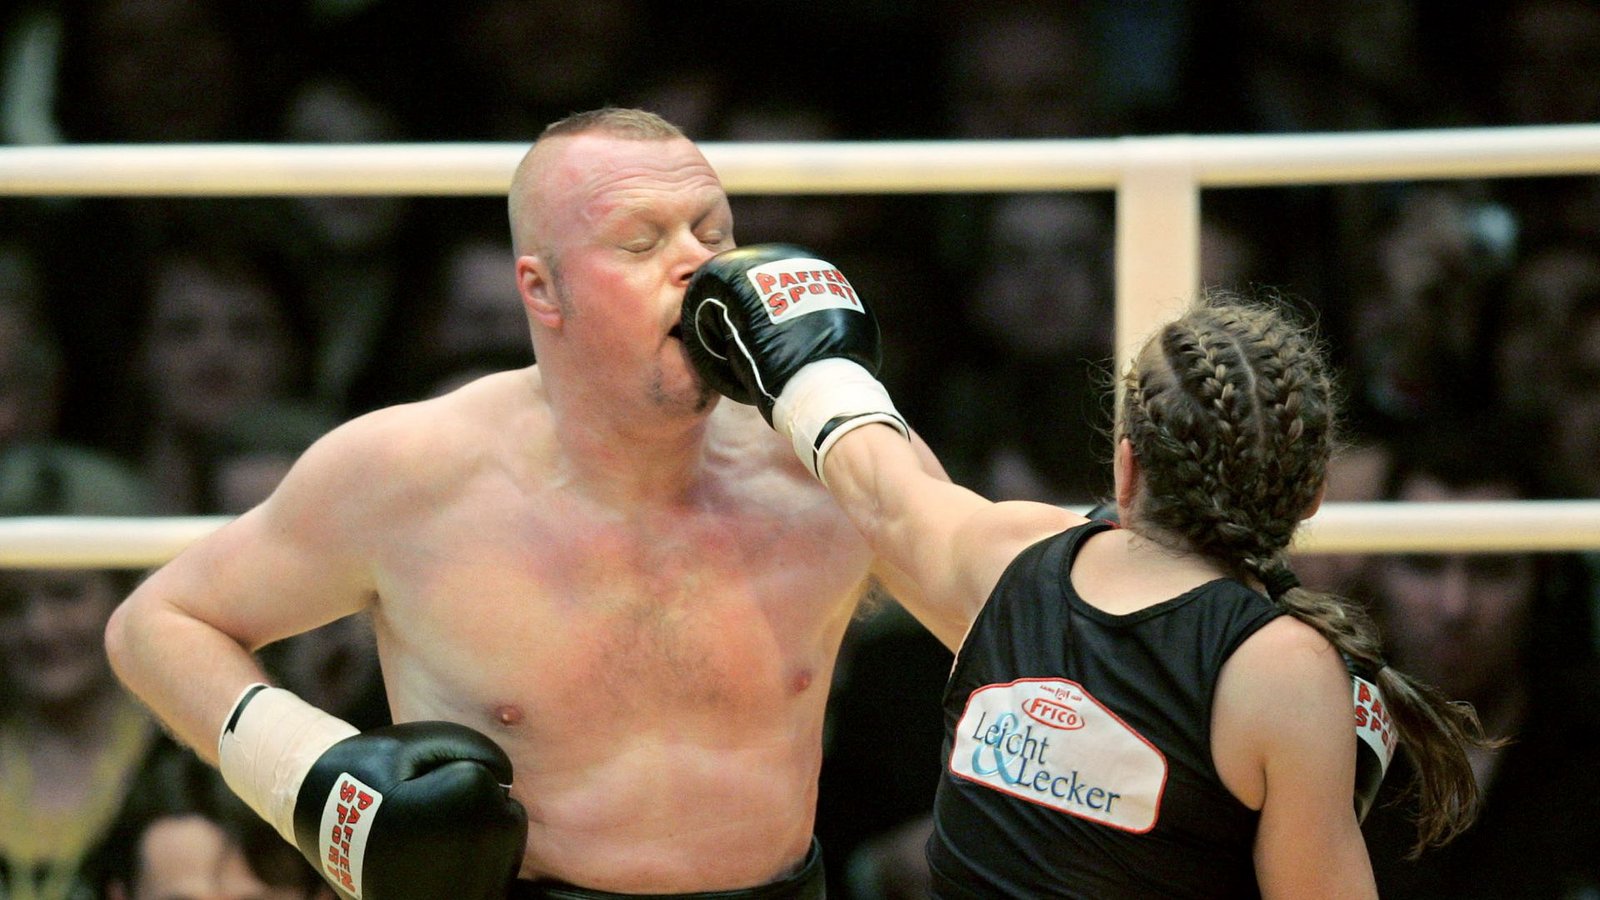 Die ehemalige Boxweltmeisterin Regina Halmich und Fernsehmoderator Stefan Raab beim Fight 2007.Foto: Rolf Vennenbernd/dpa